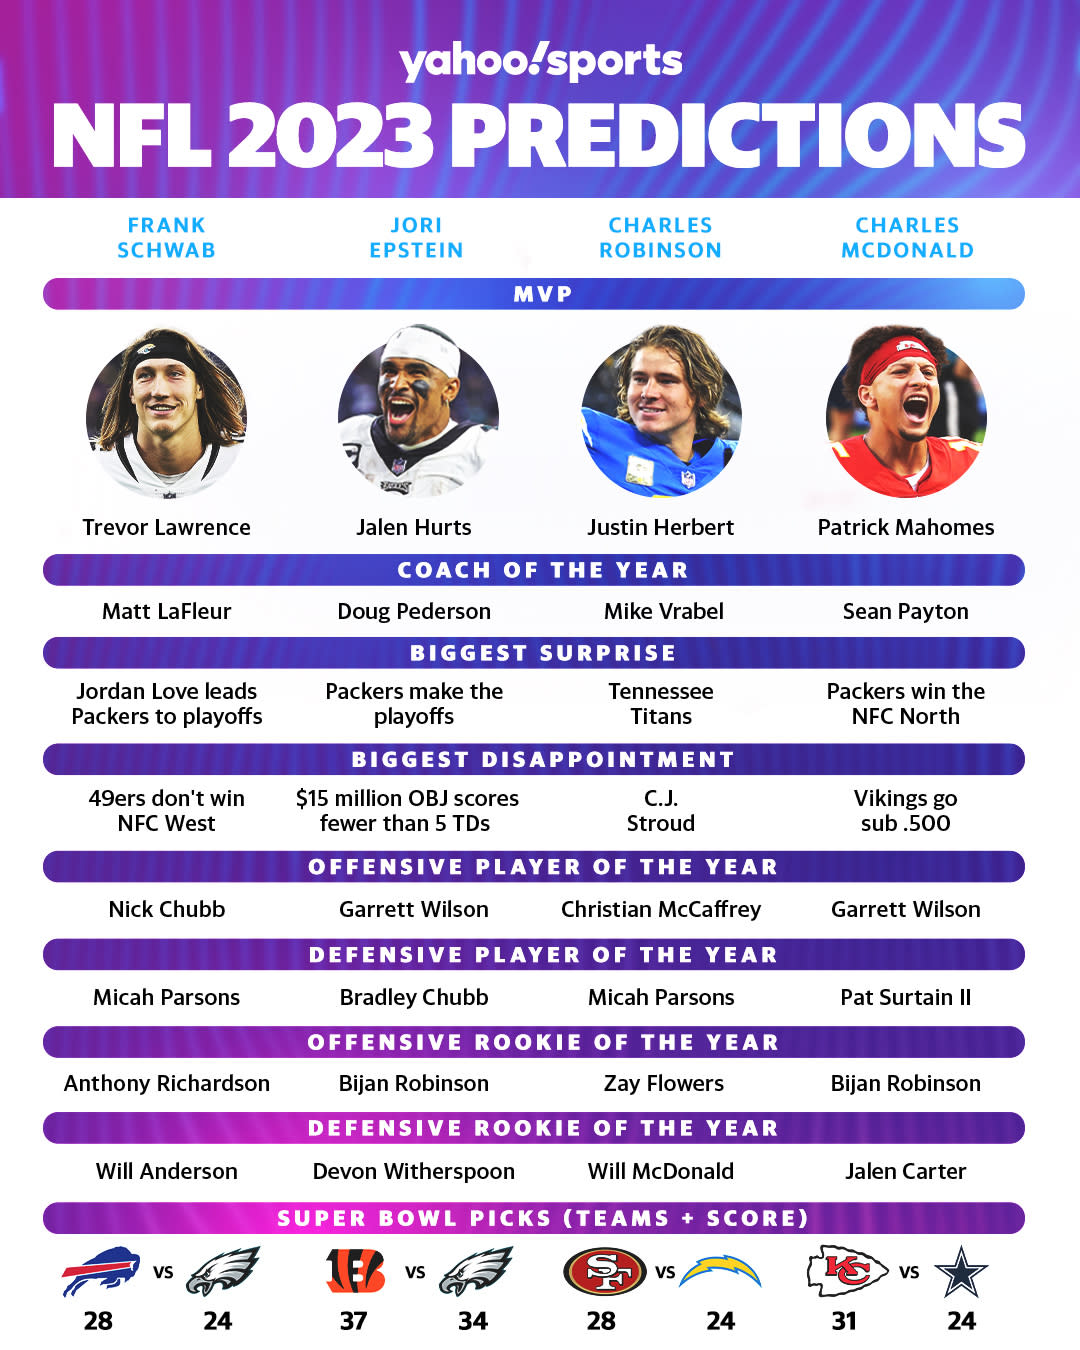 NFL 2023 predictions